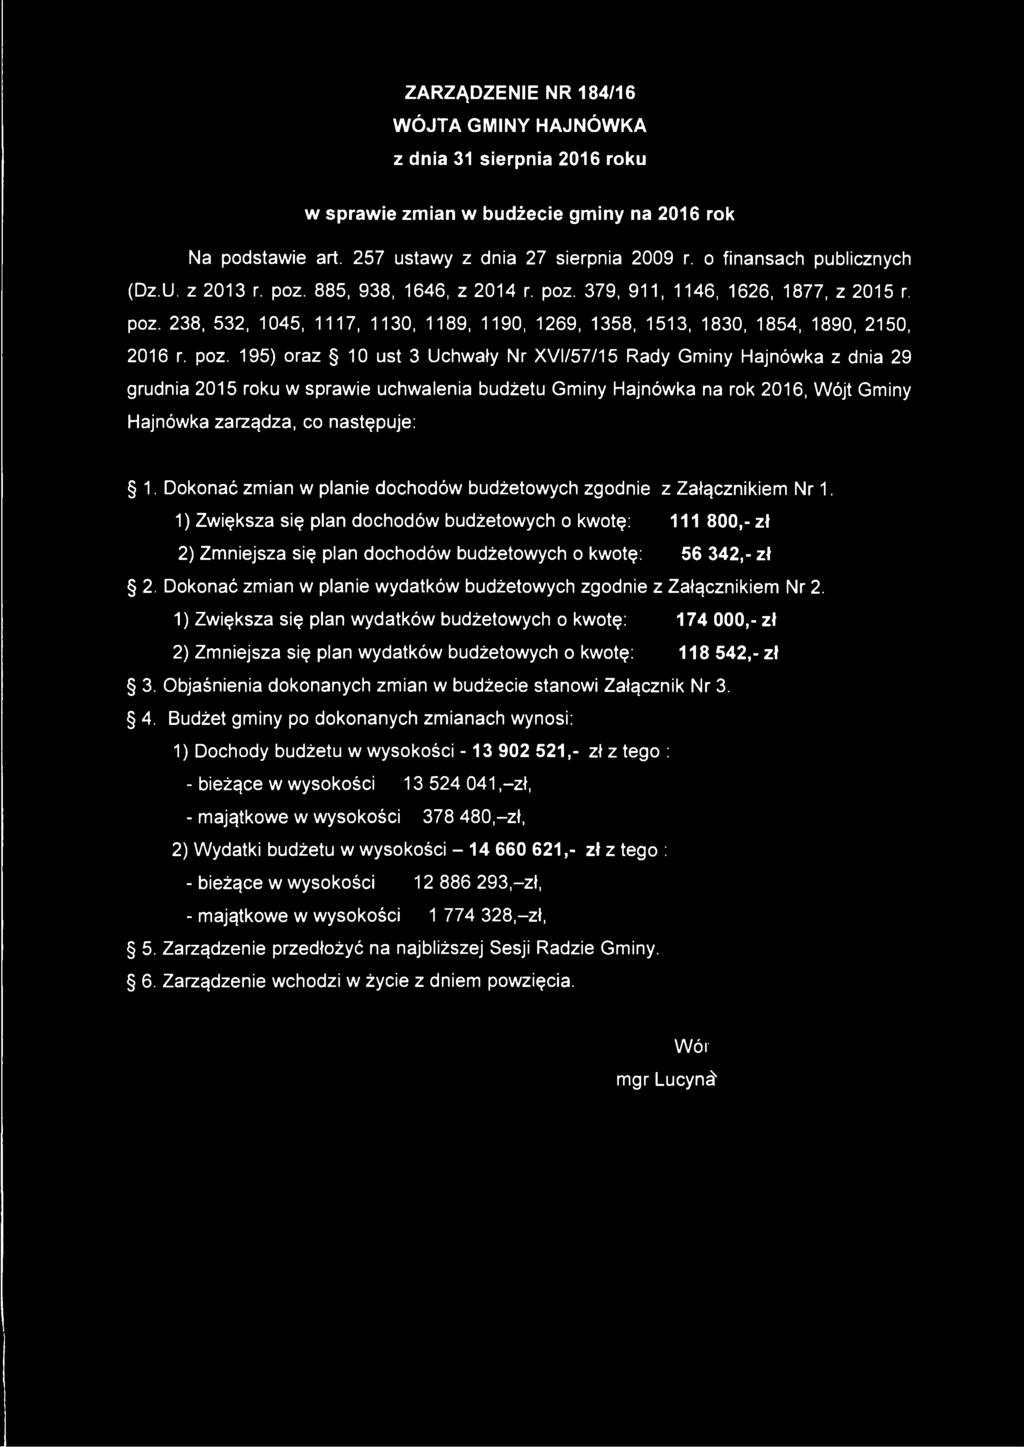 poz. 195) oraz 10 ust 3 Uchwały Nr XVI/57/15 Rady Gminy Hajnówka z dnia 29 grudnia 2015 roku w sprawie uchwalenia budżetu Gminy Hajnówka na rok 2016, Wójt Gminy Hajnówka zarządza, co następuje: 1.